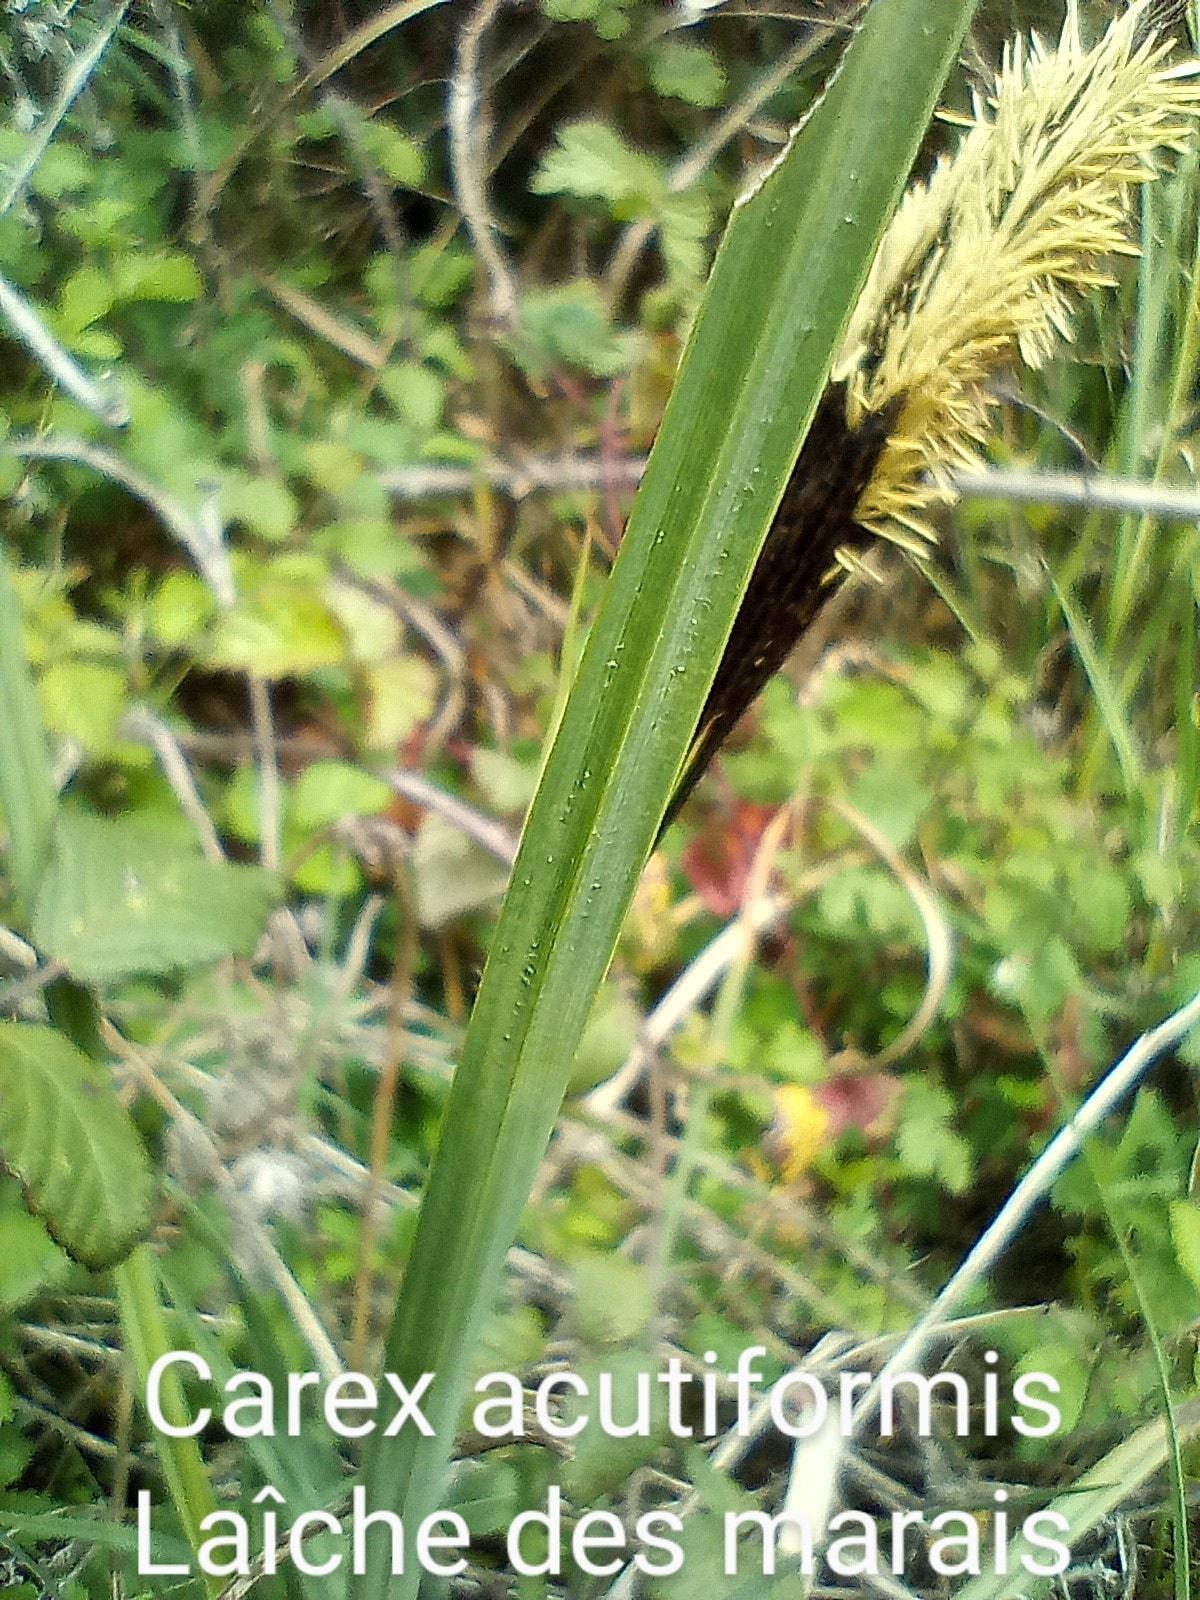 Carex acutiformis 06 04 23